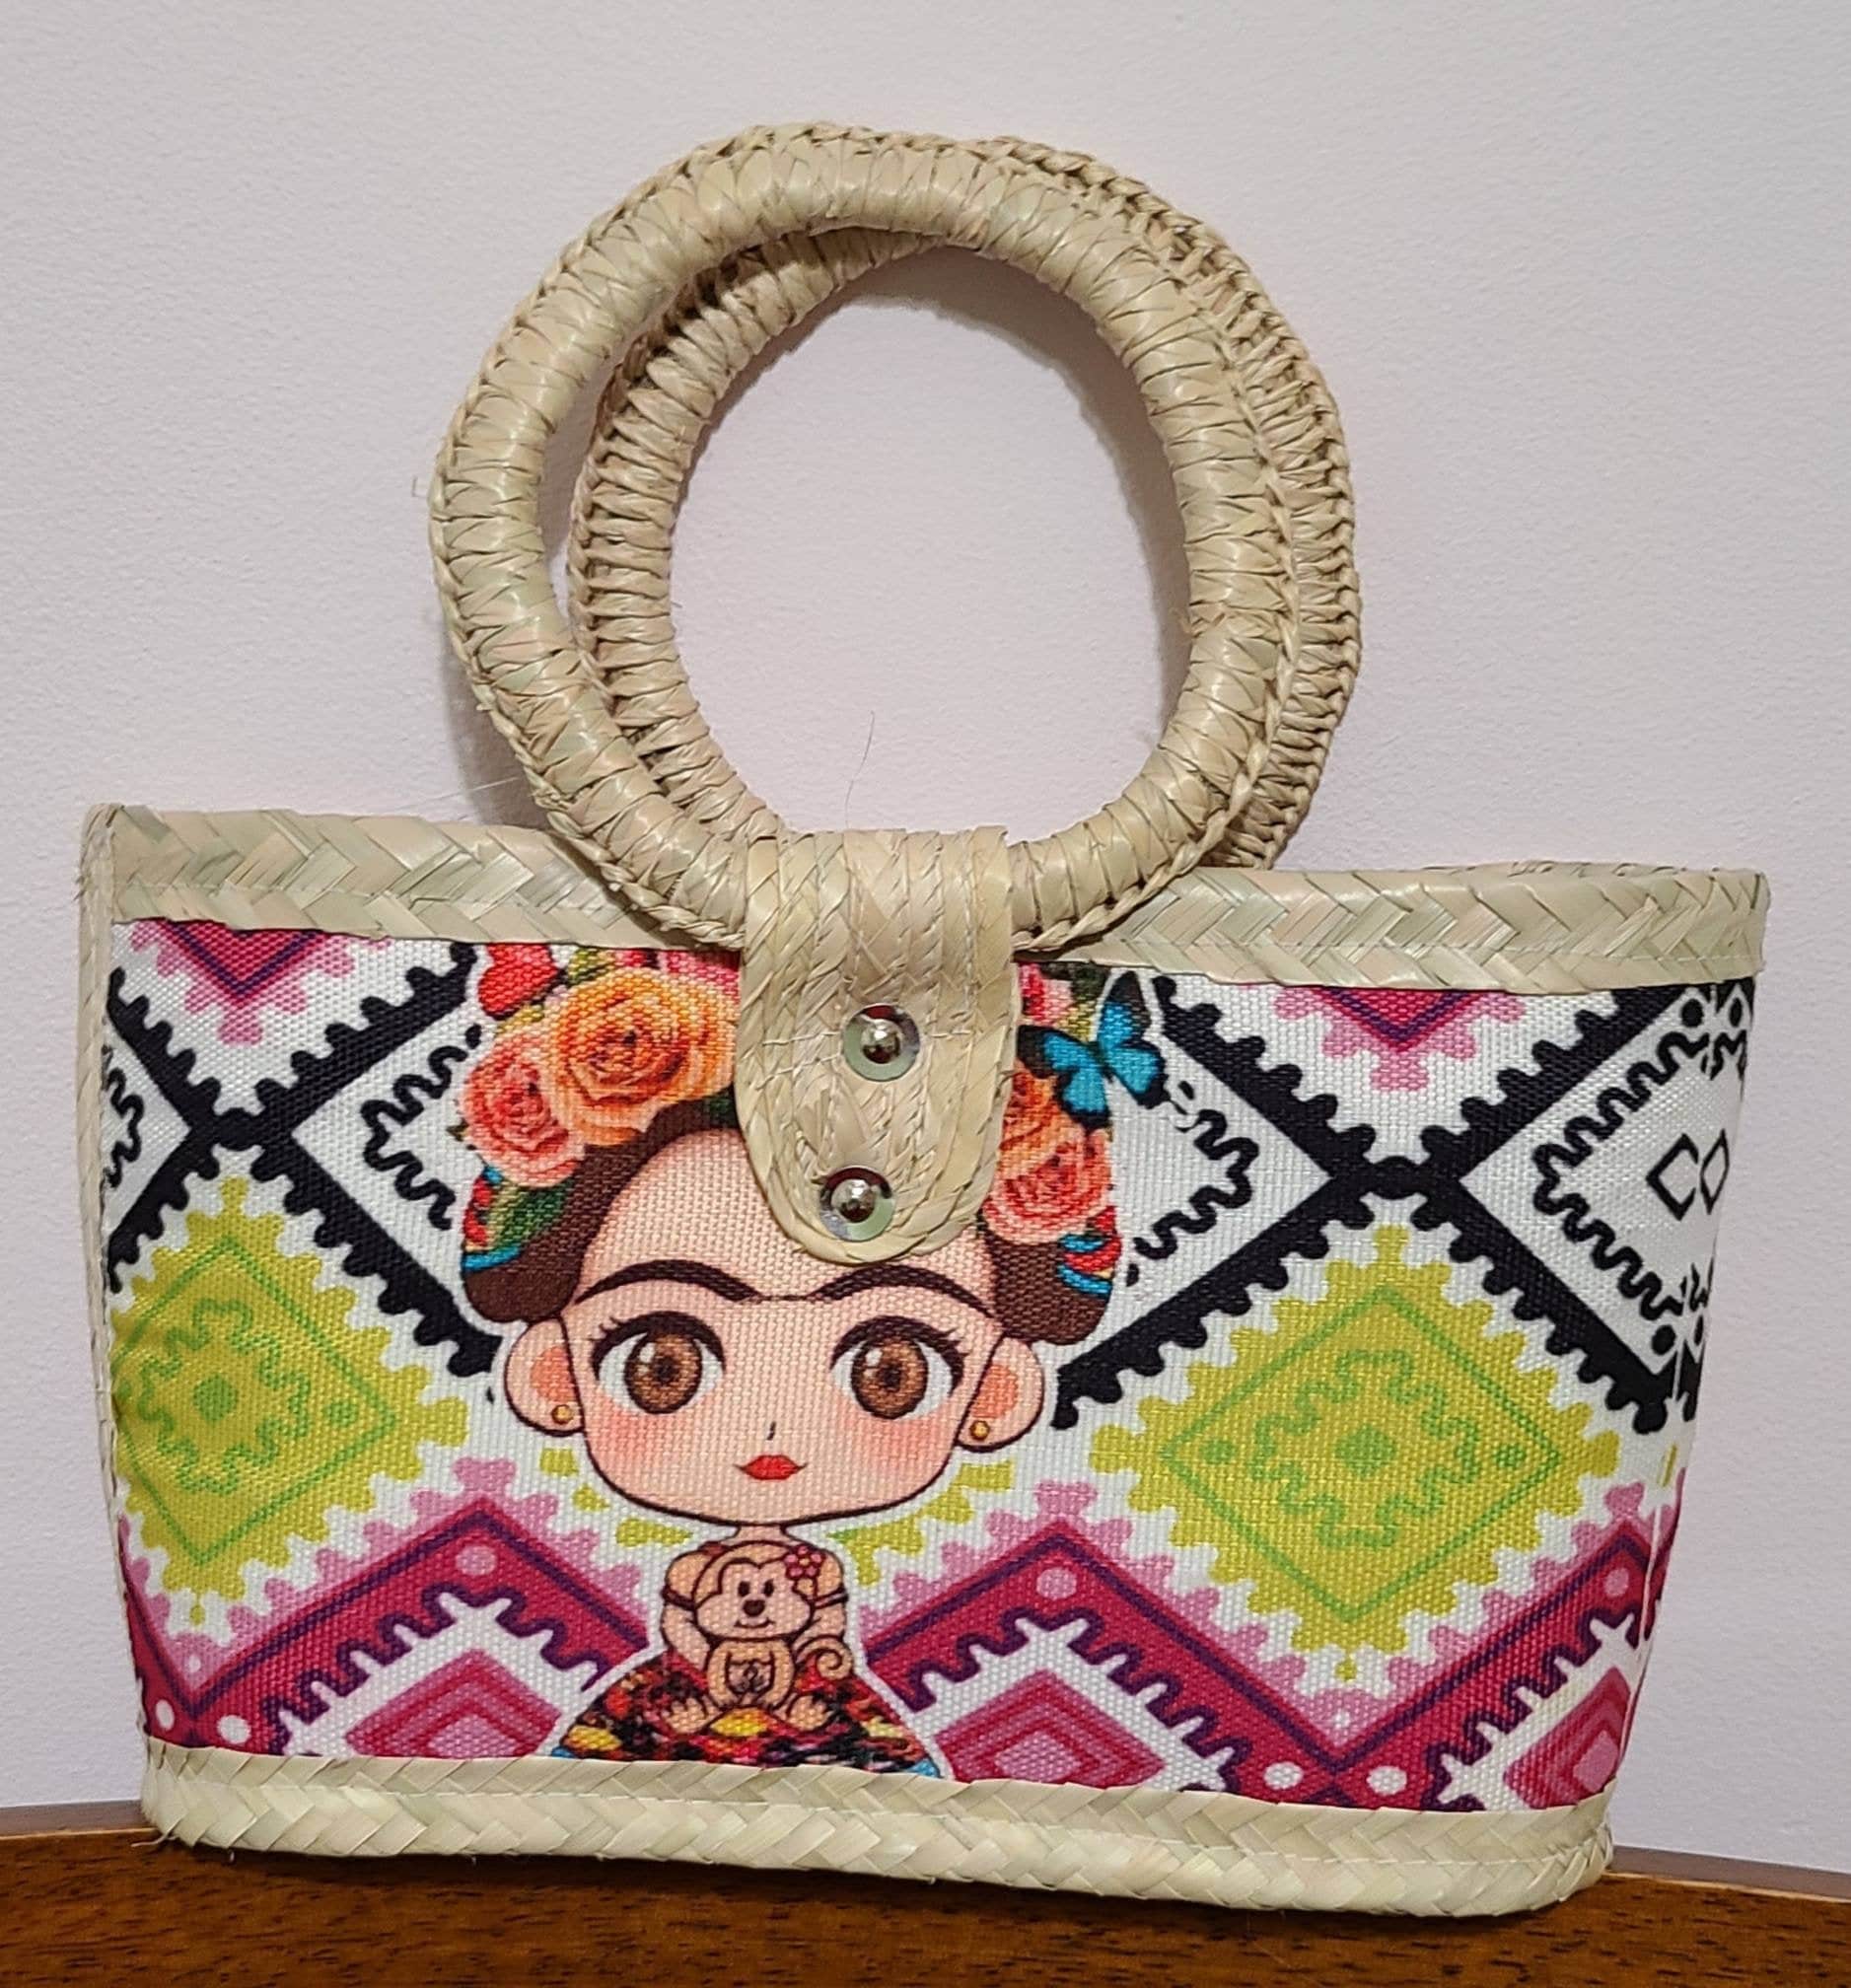 Frida Kahlo's bag – Lenbutik.com